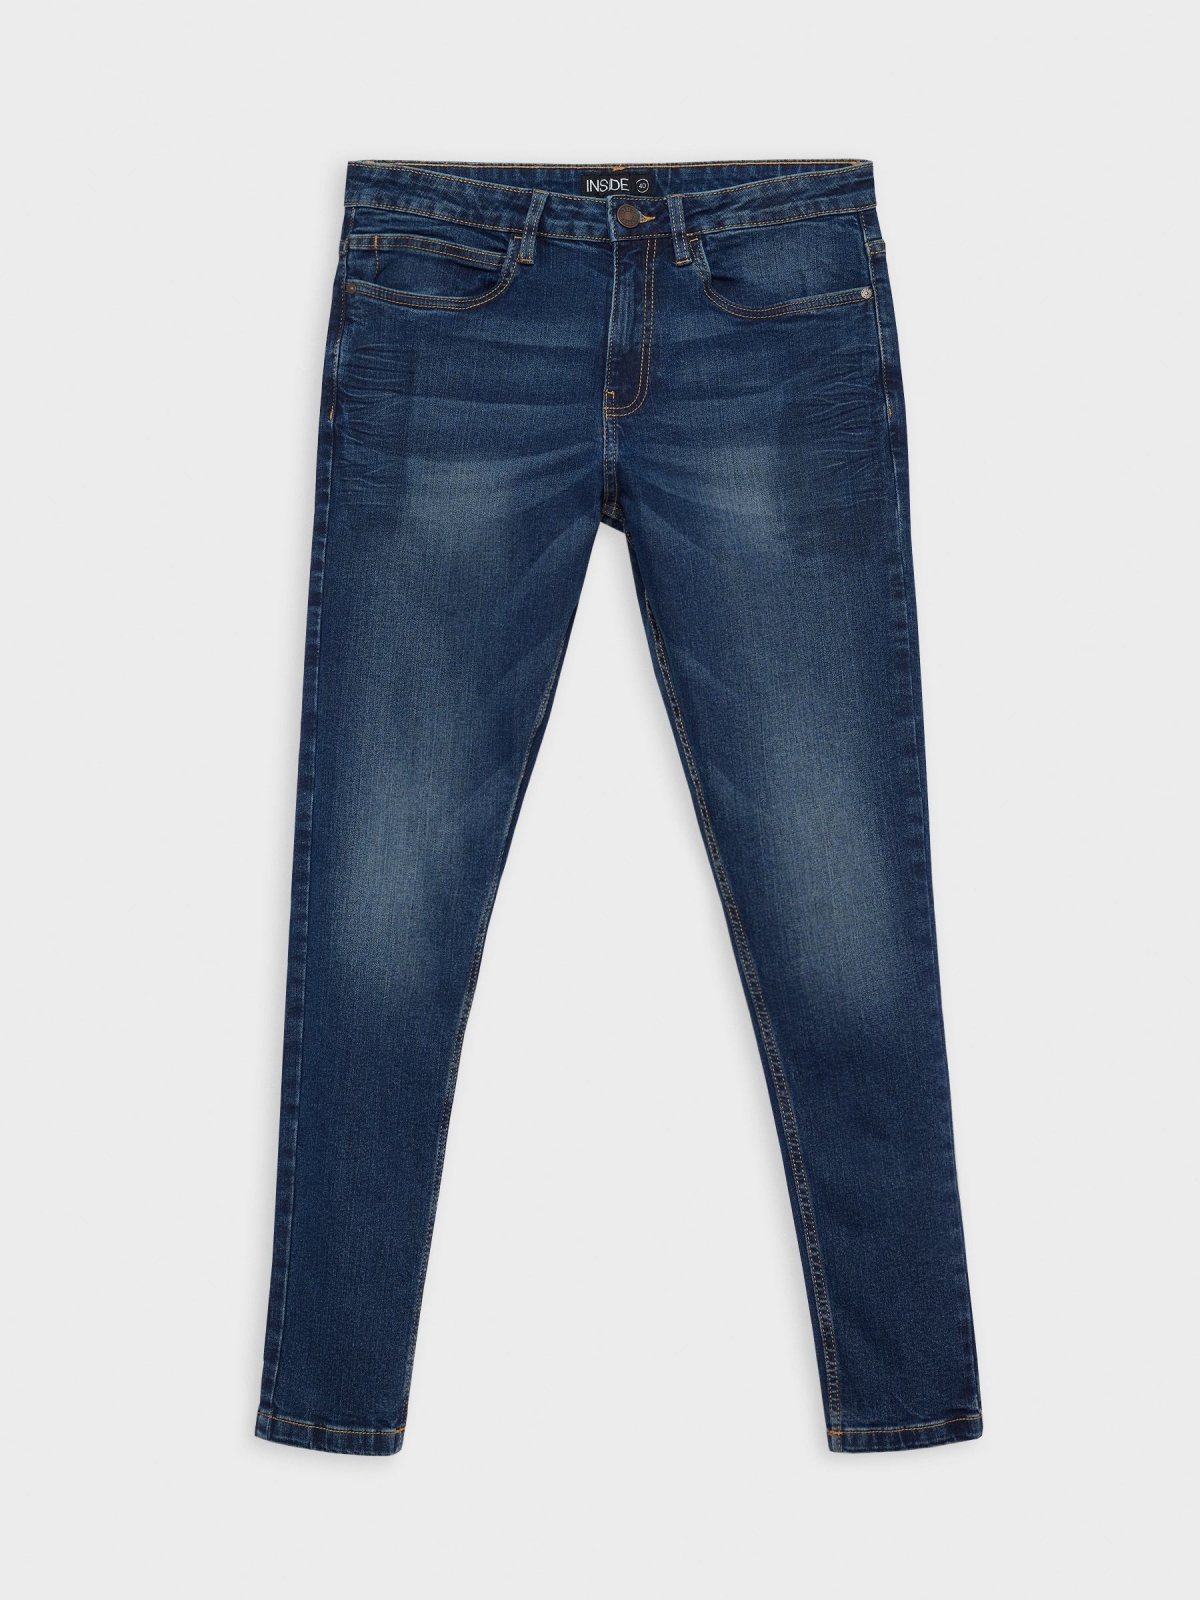  Jeans skinny oscuro desgastados azul